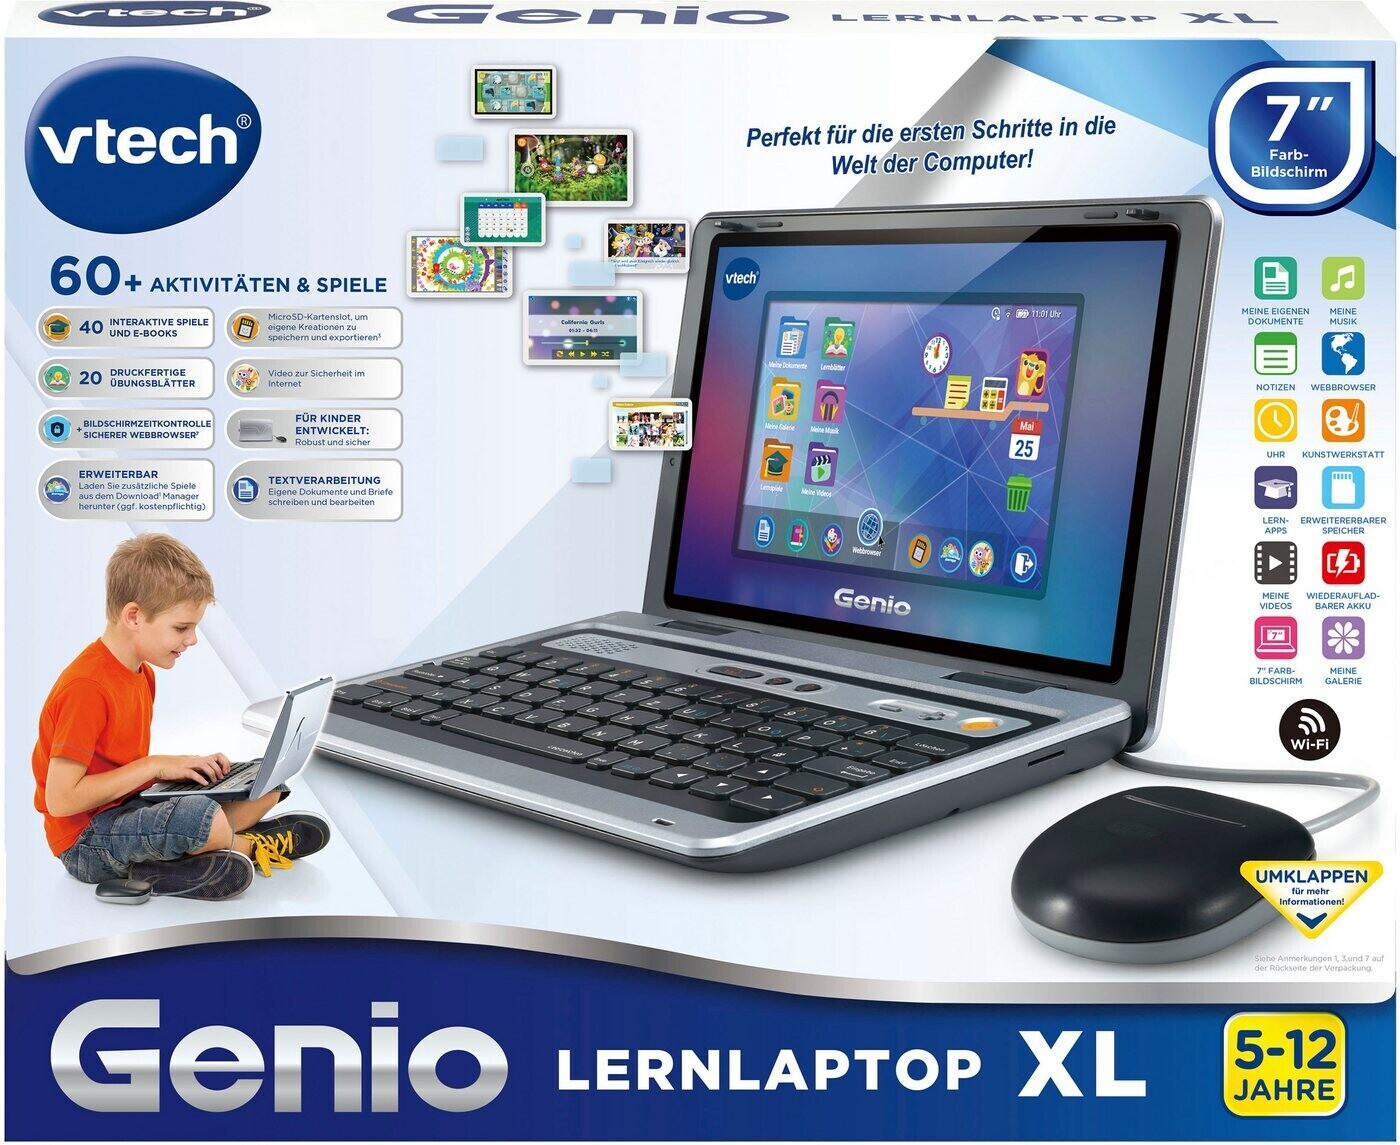 VTech Genio Lernlaptop (Deutsch)1.2 GHz 1GB RAM 8GB Speicher